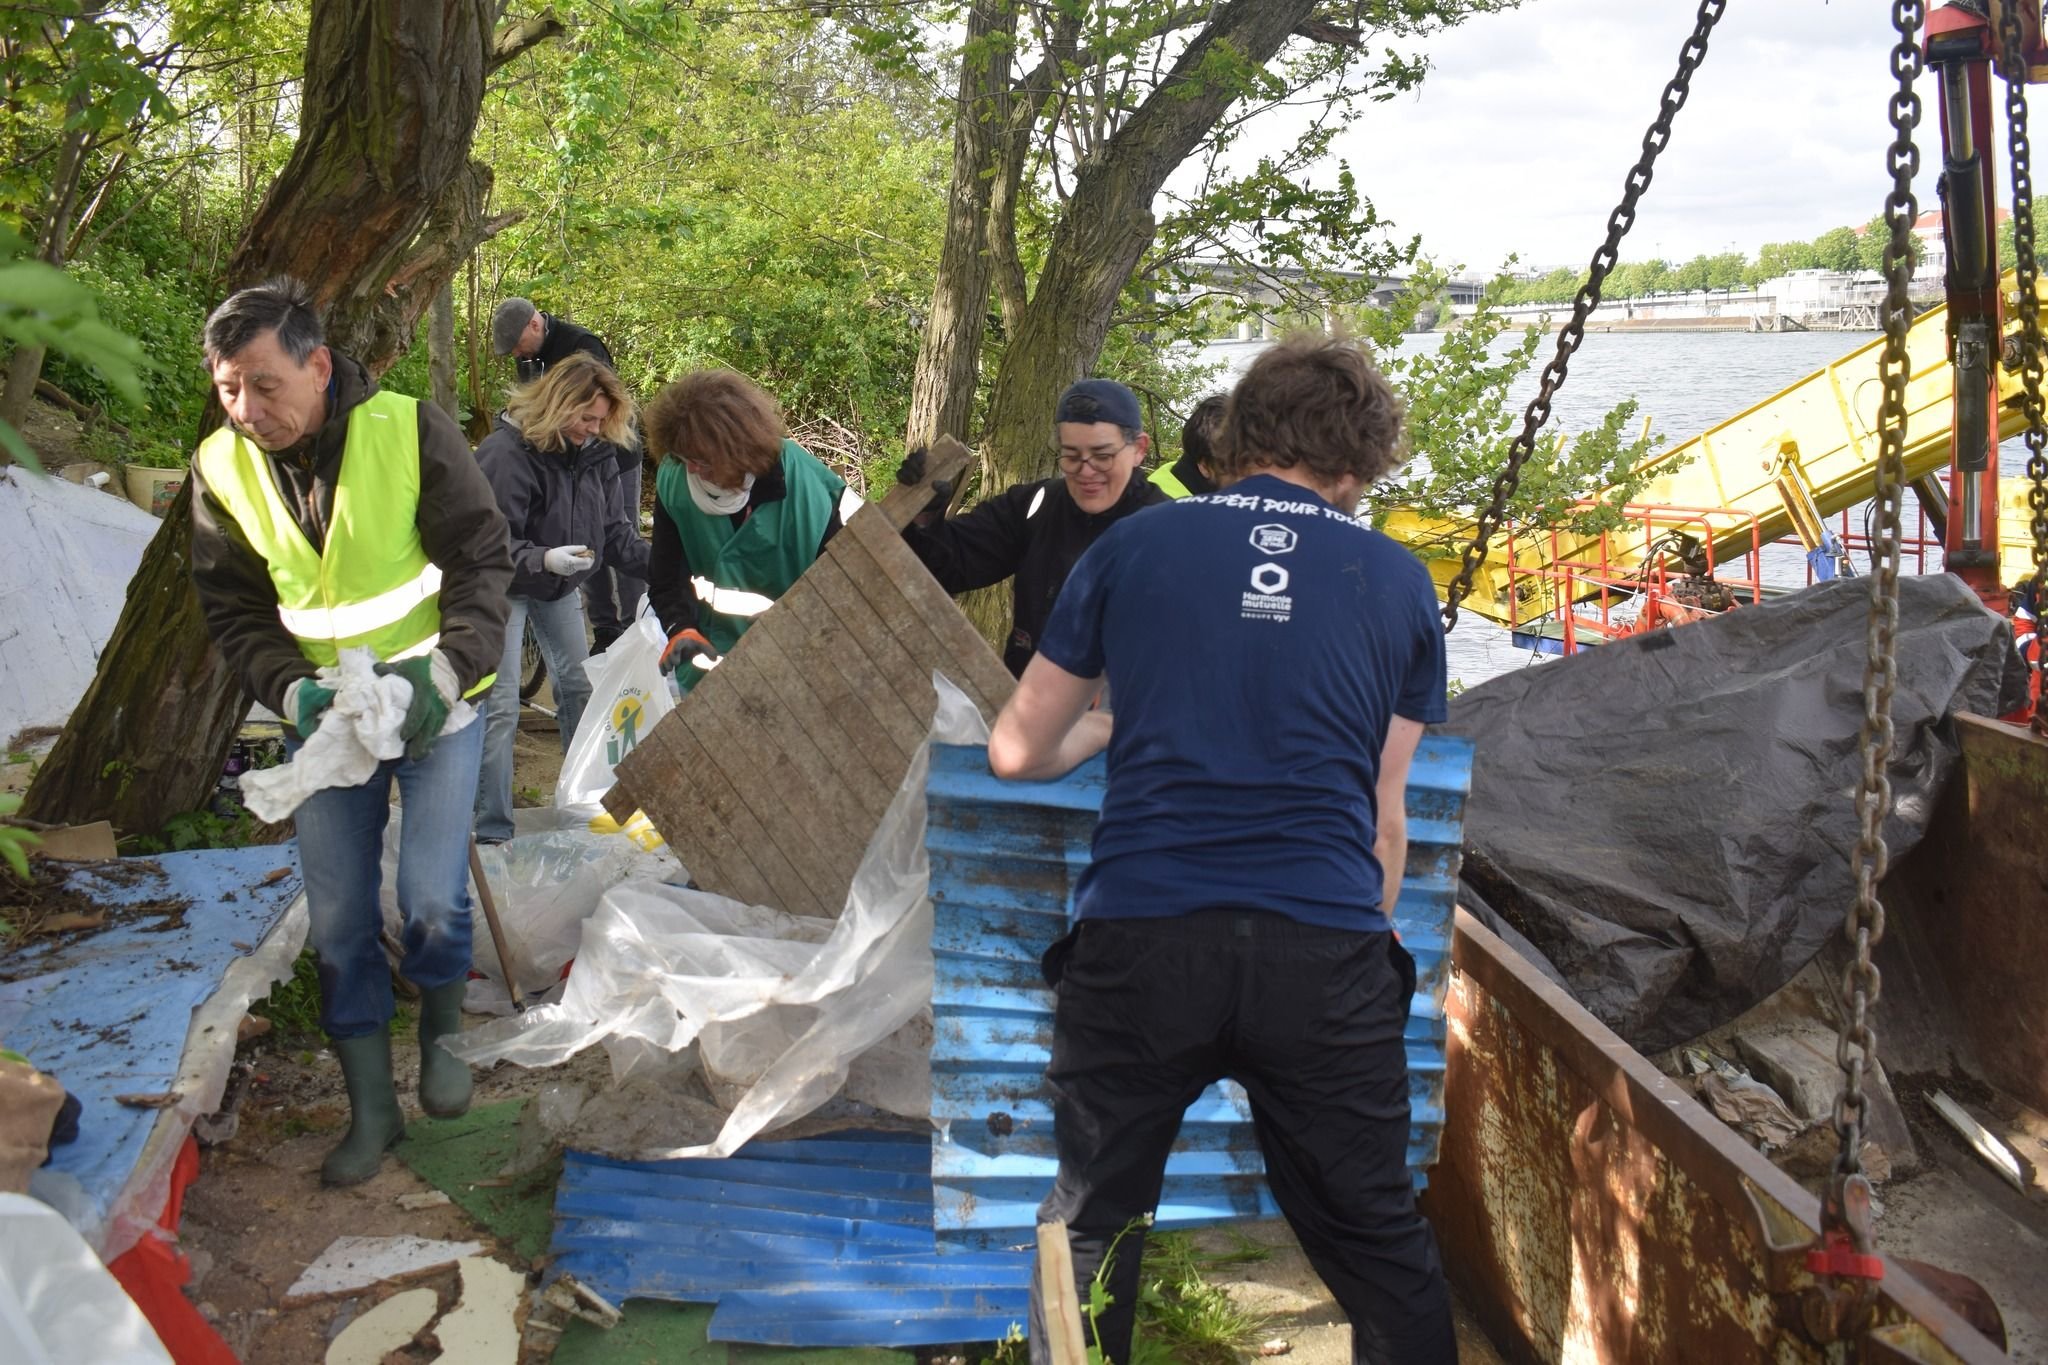 Les bénévoles de l'association OSE ont retiré plus de 15 tonnes de déchets sur les berges de Seine à Villeneuve-le-Roi (Val-de-Marne) depuis le début de l'année. DR